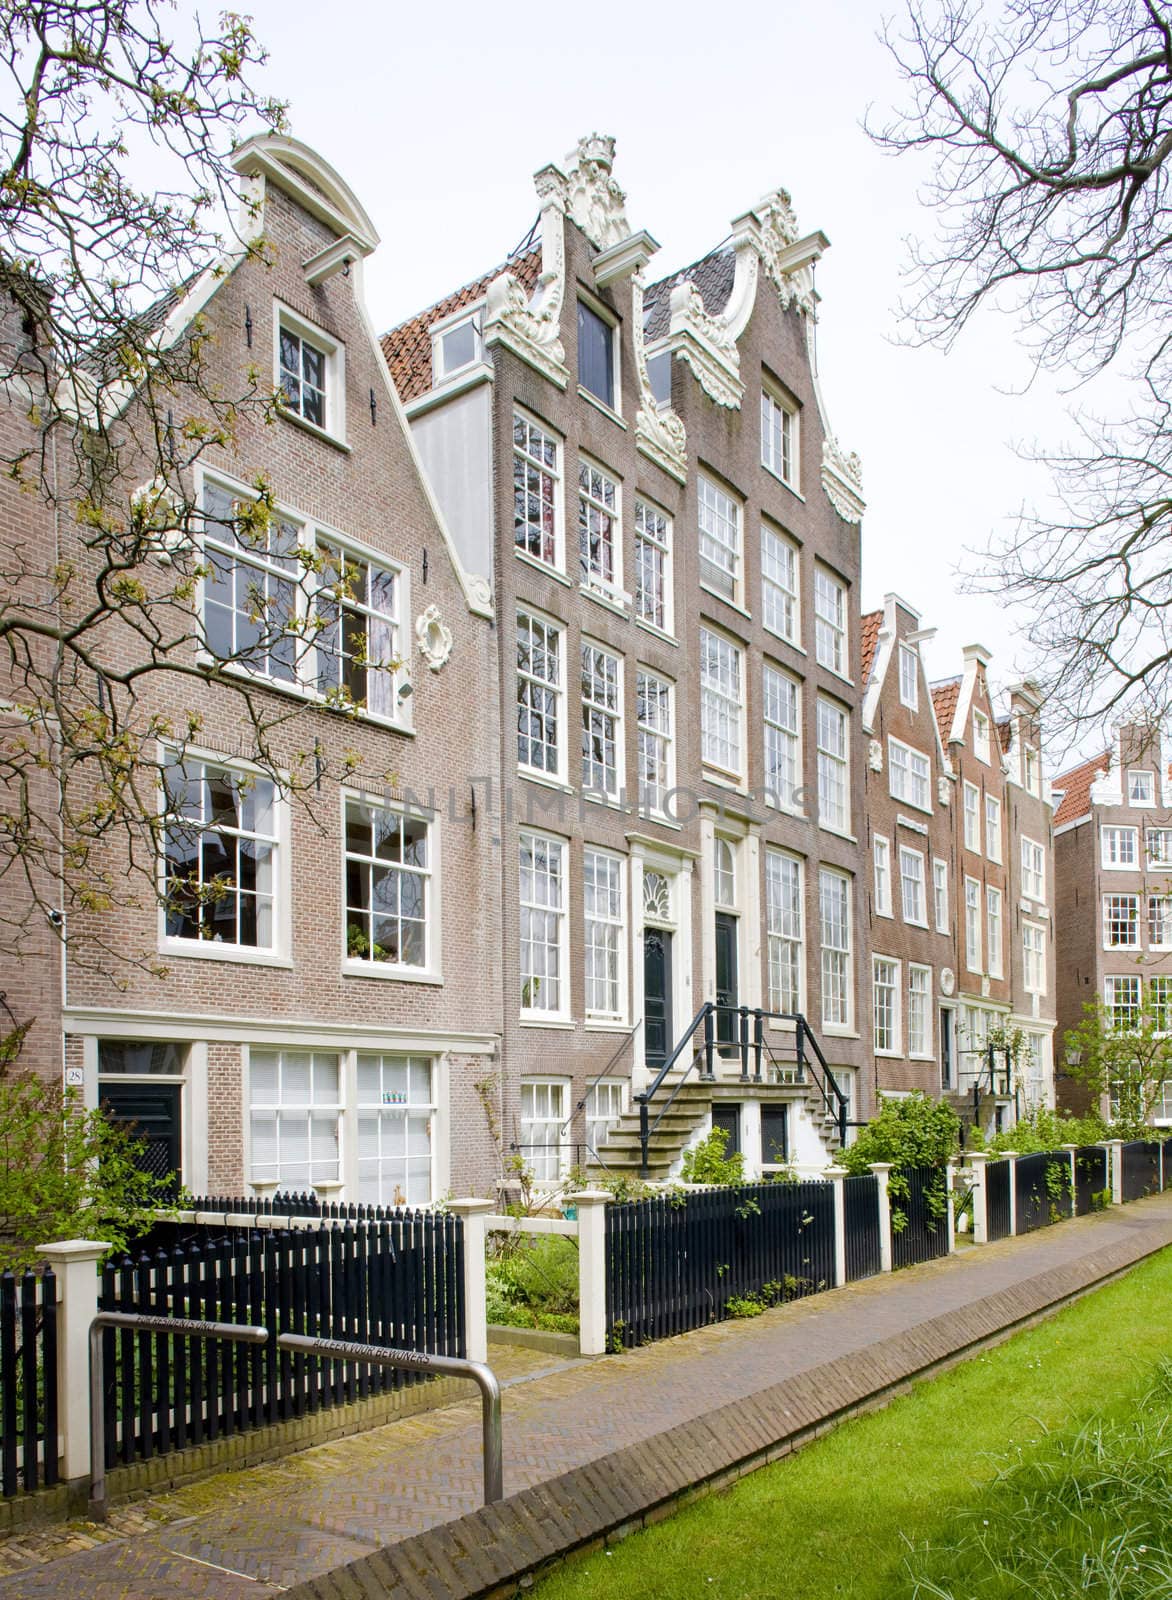 Begijnhof, Amsterdam, Netherlands by phbcz